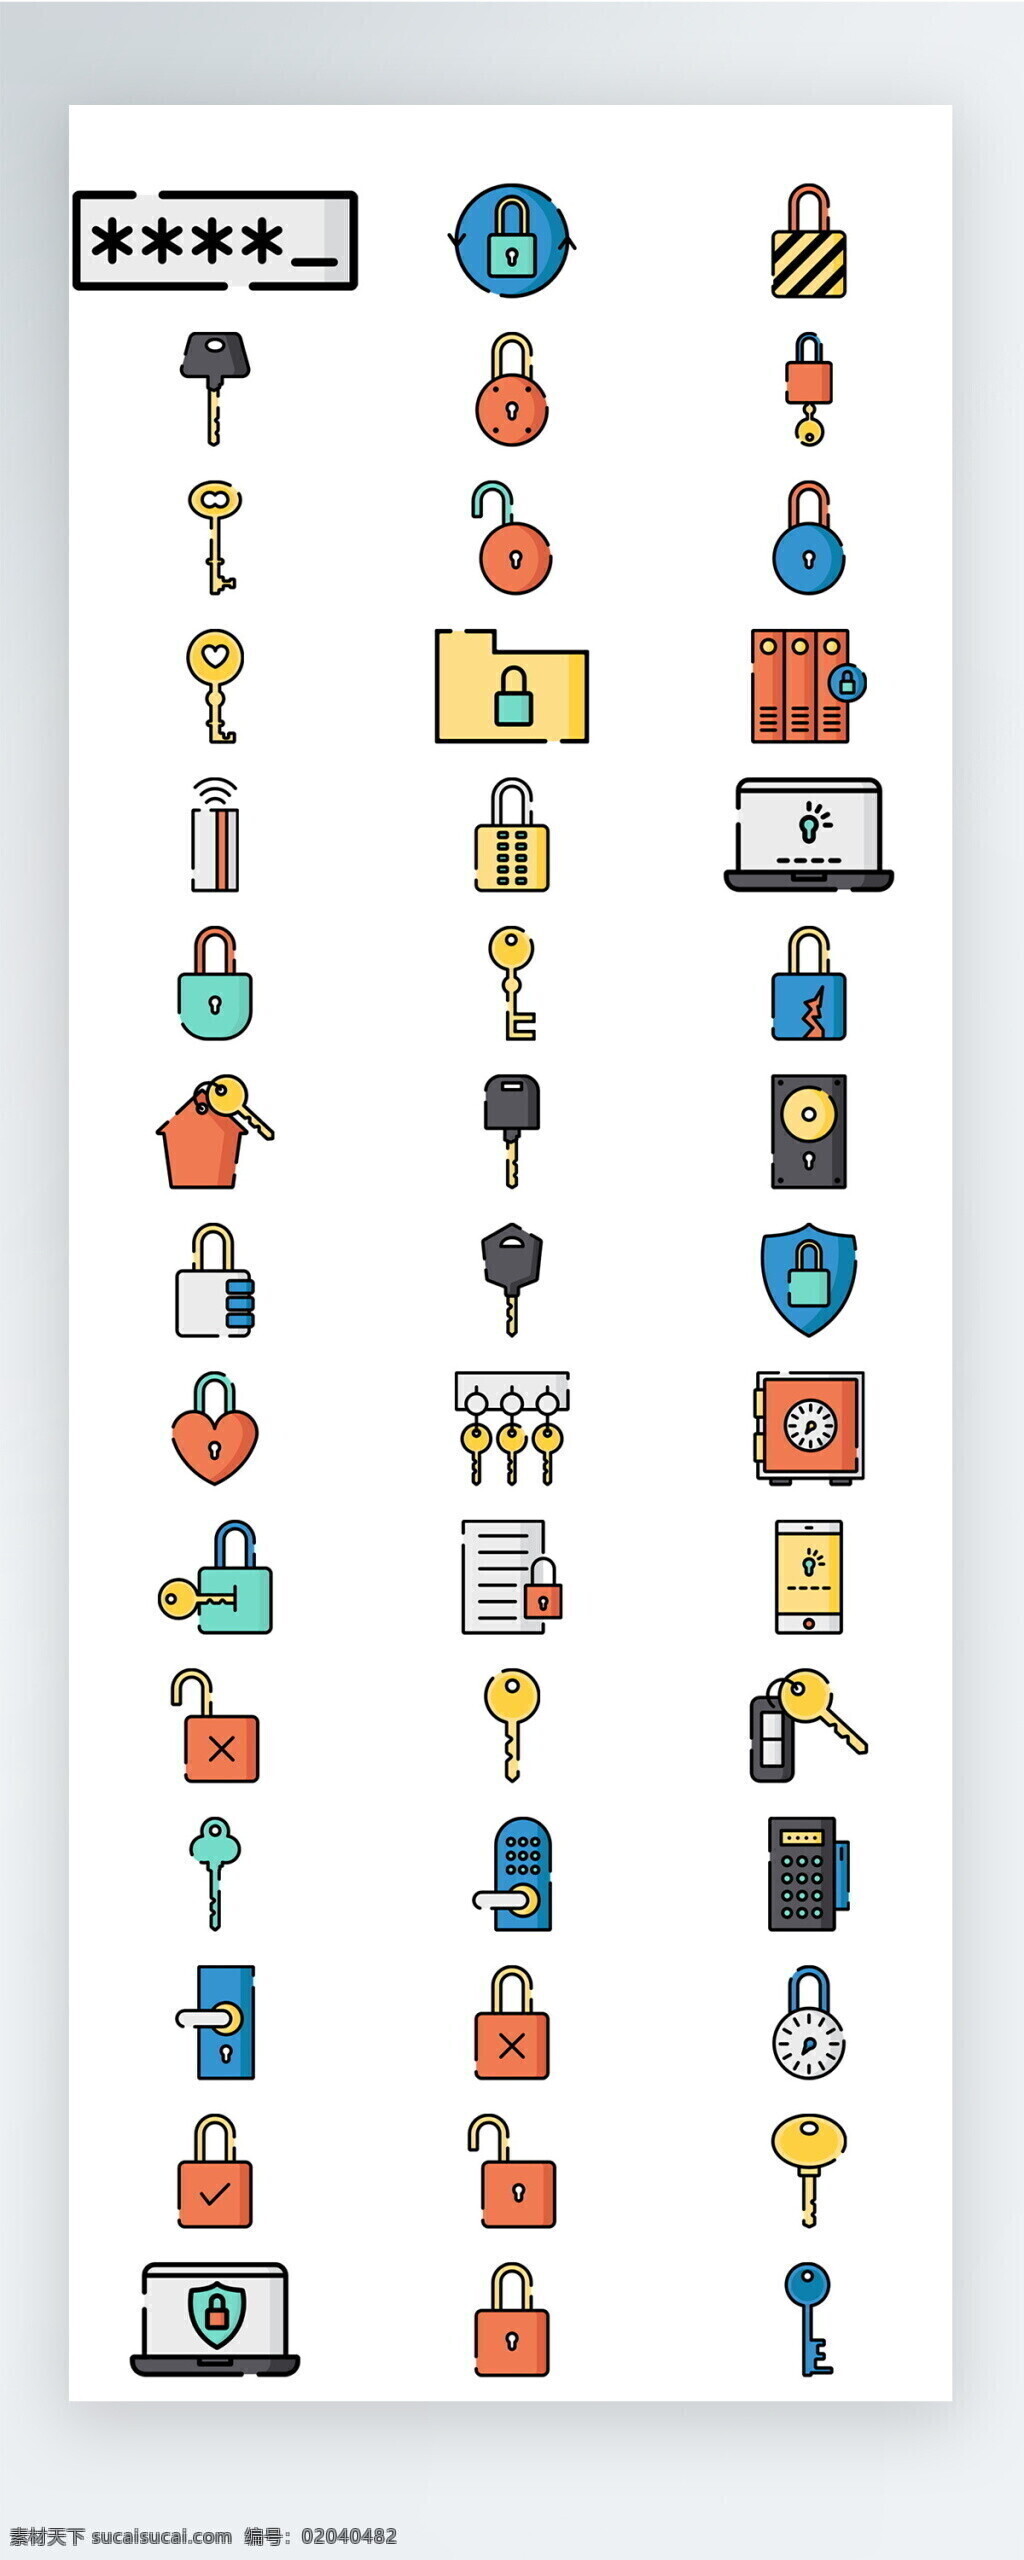 彩色 锁具 图标 矢量 icon icon图标 ui 手机 拟物 社交 人物 购物 工具 安保 施工 建筑 生活 家具